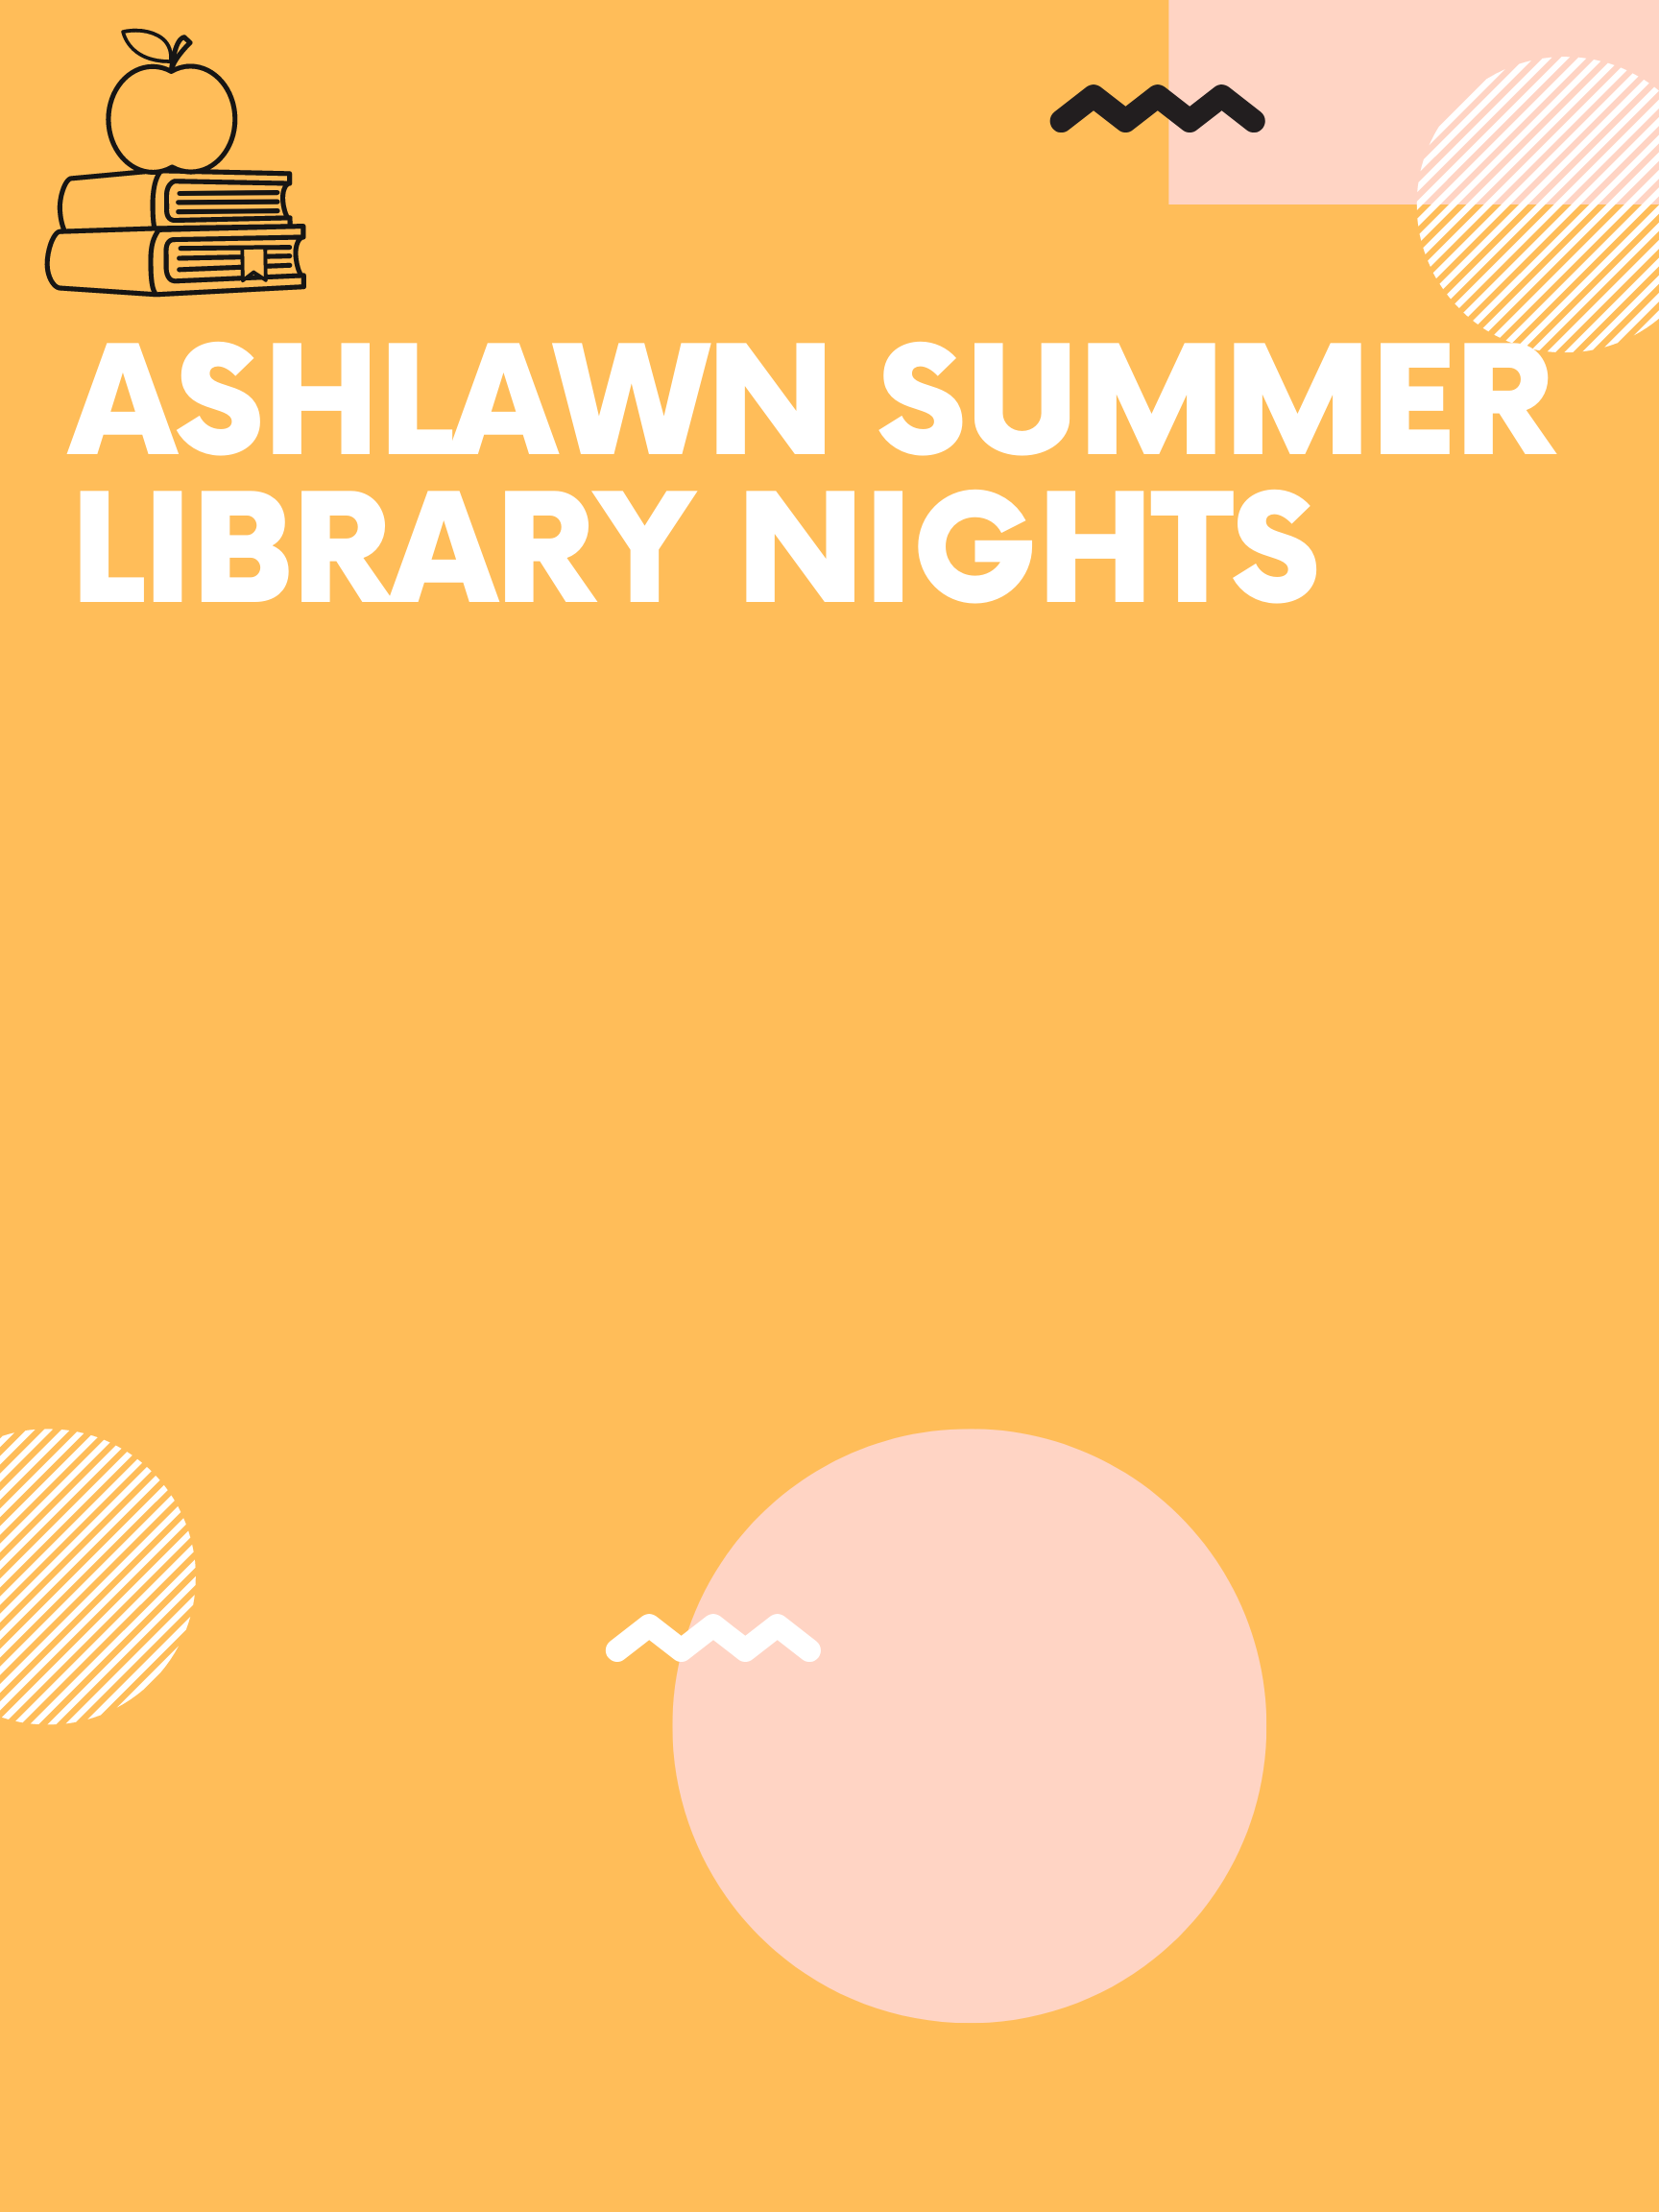 Ashlawn Summer Library Nights